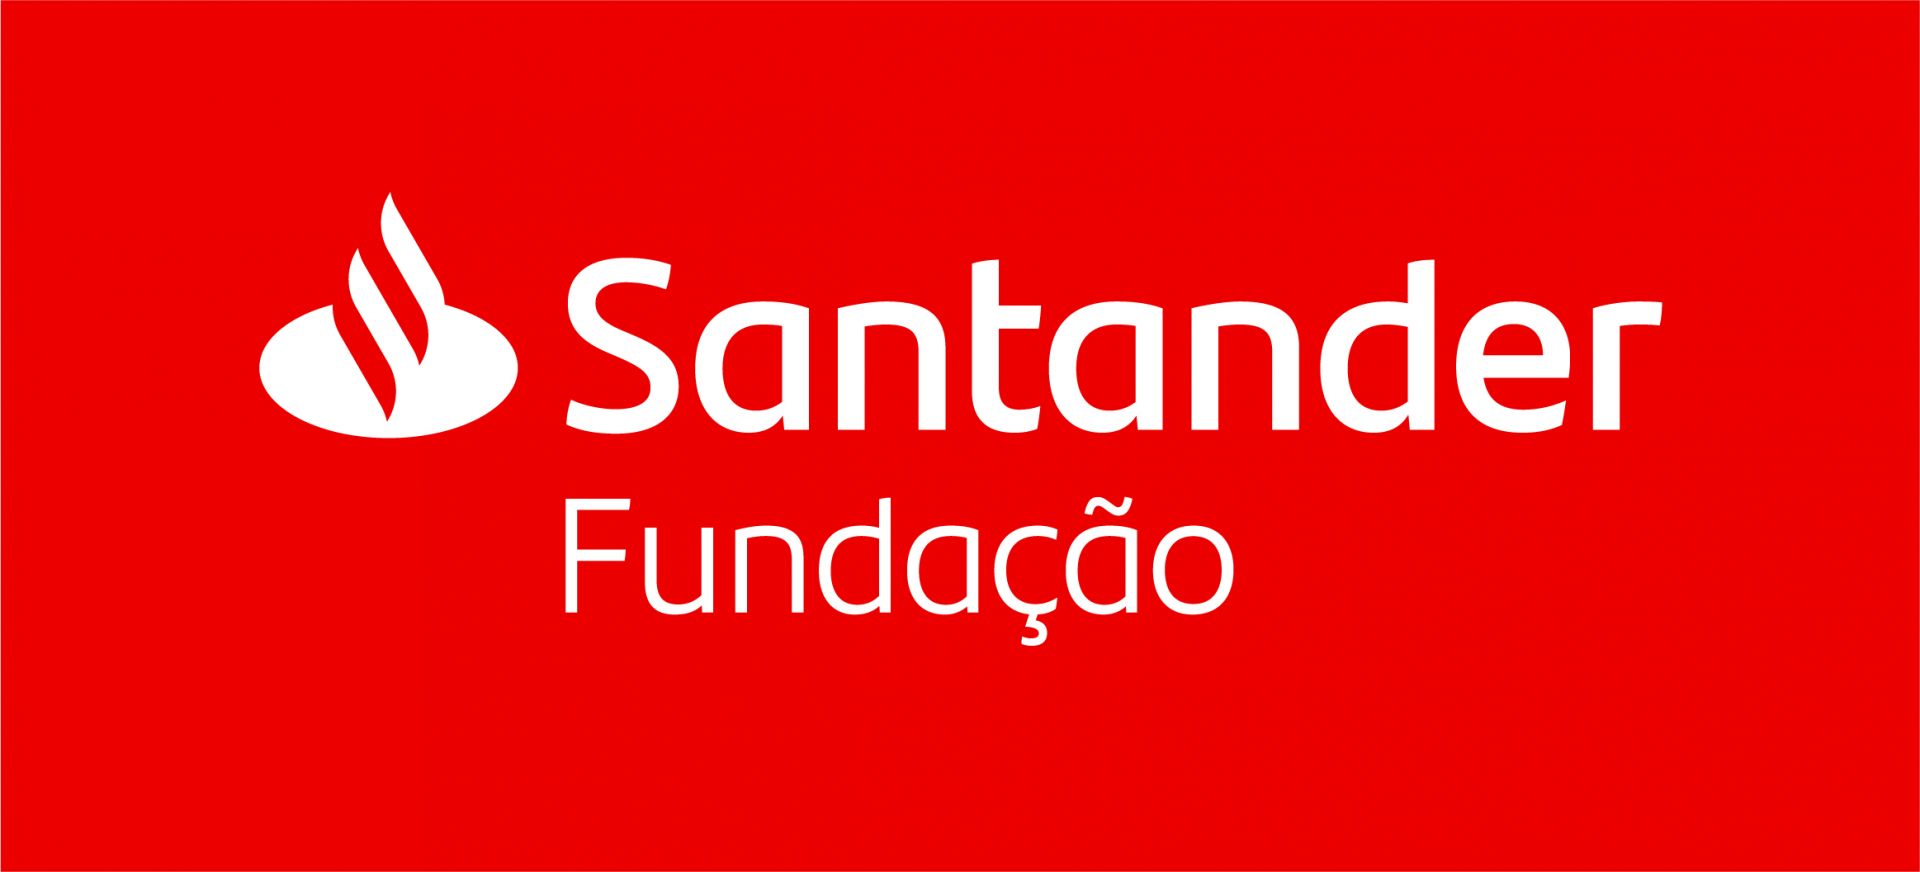 Bolsas Santander Futuro